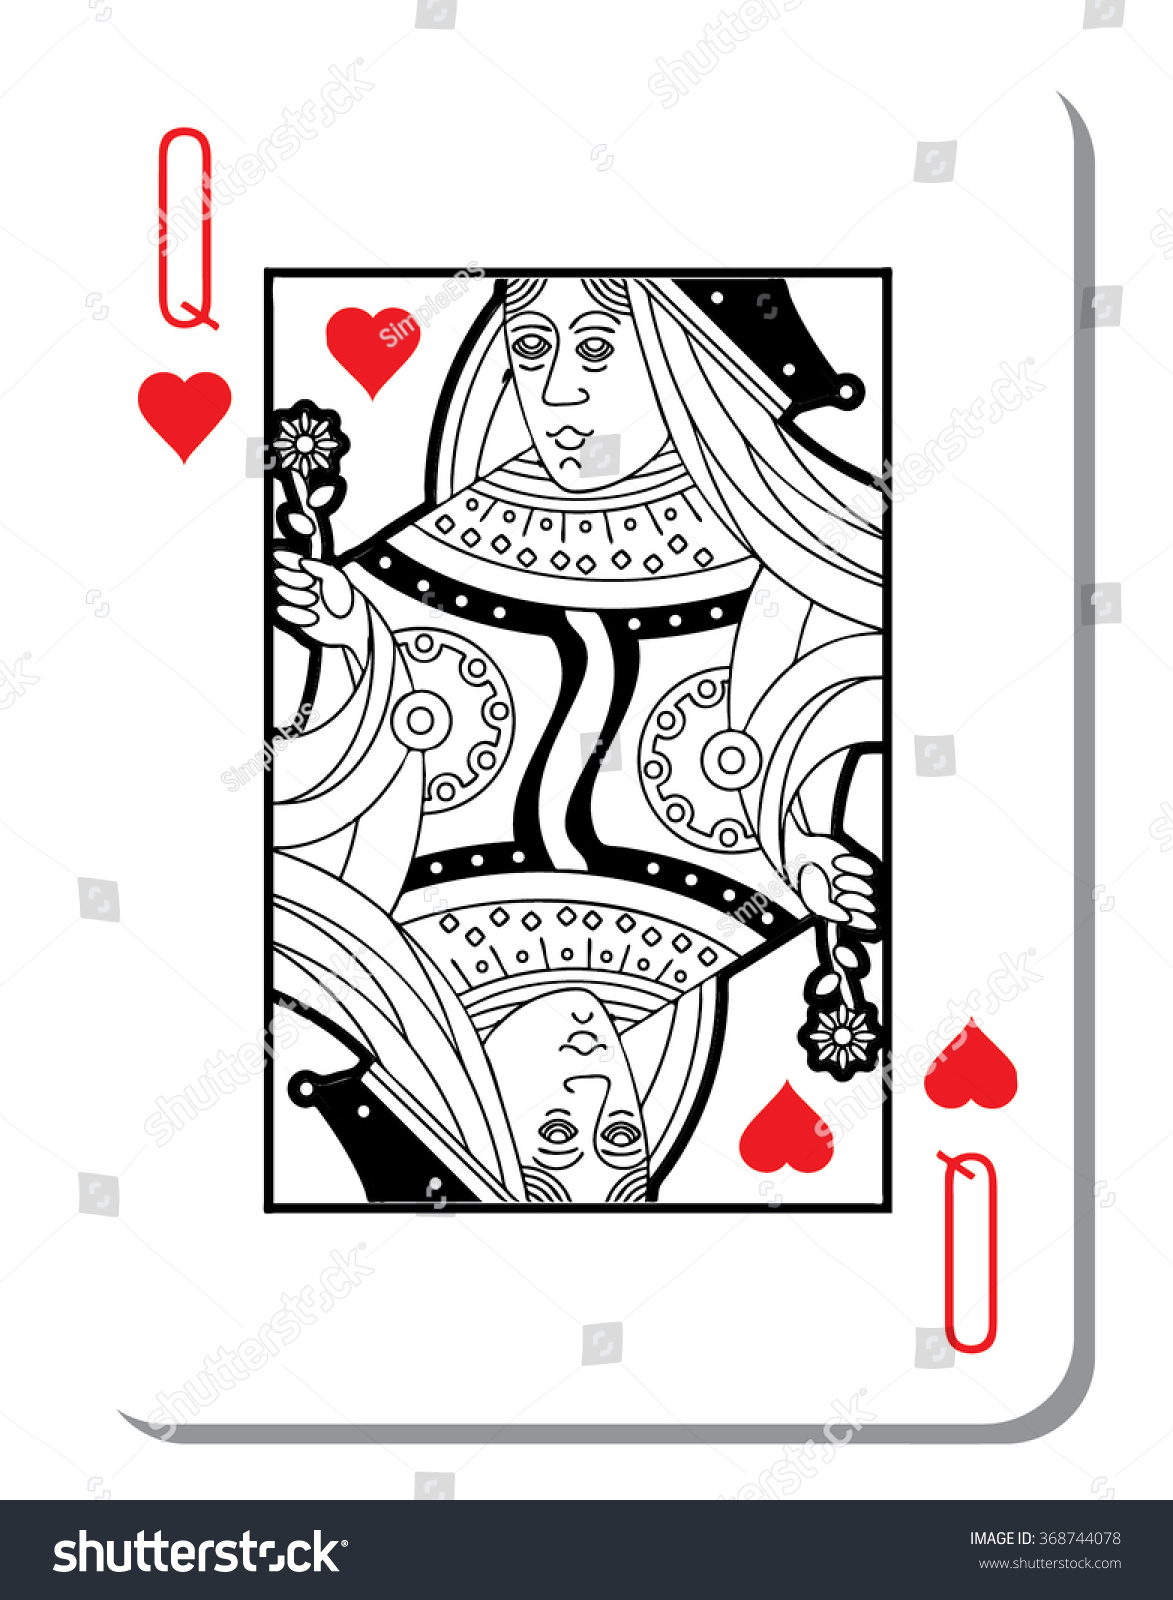 Hearts Queen Blank Background Poker Deck Stock Vector 368744078 ...